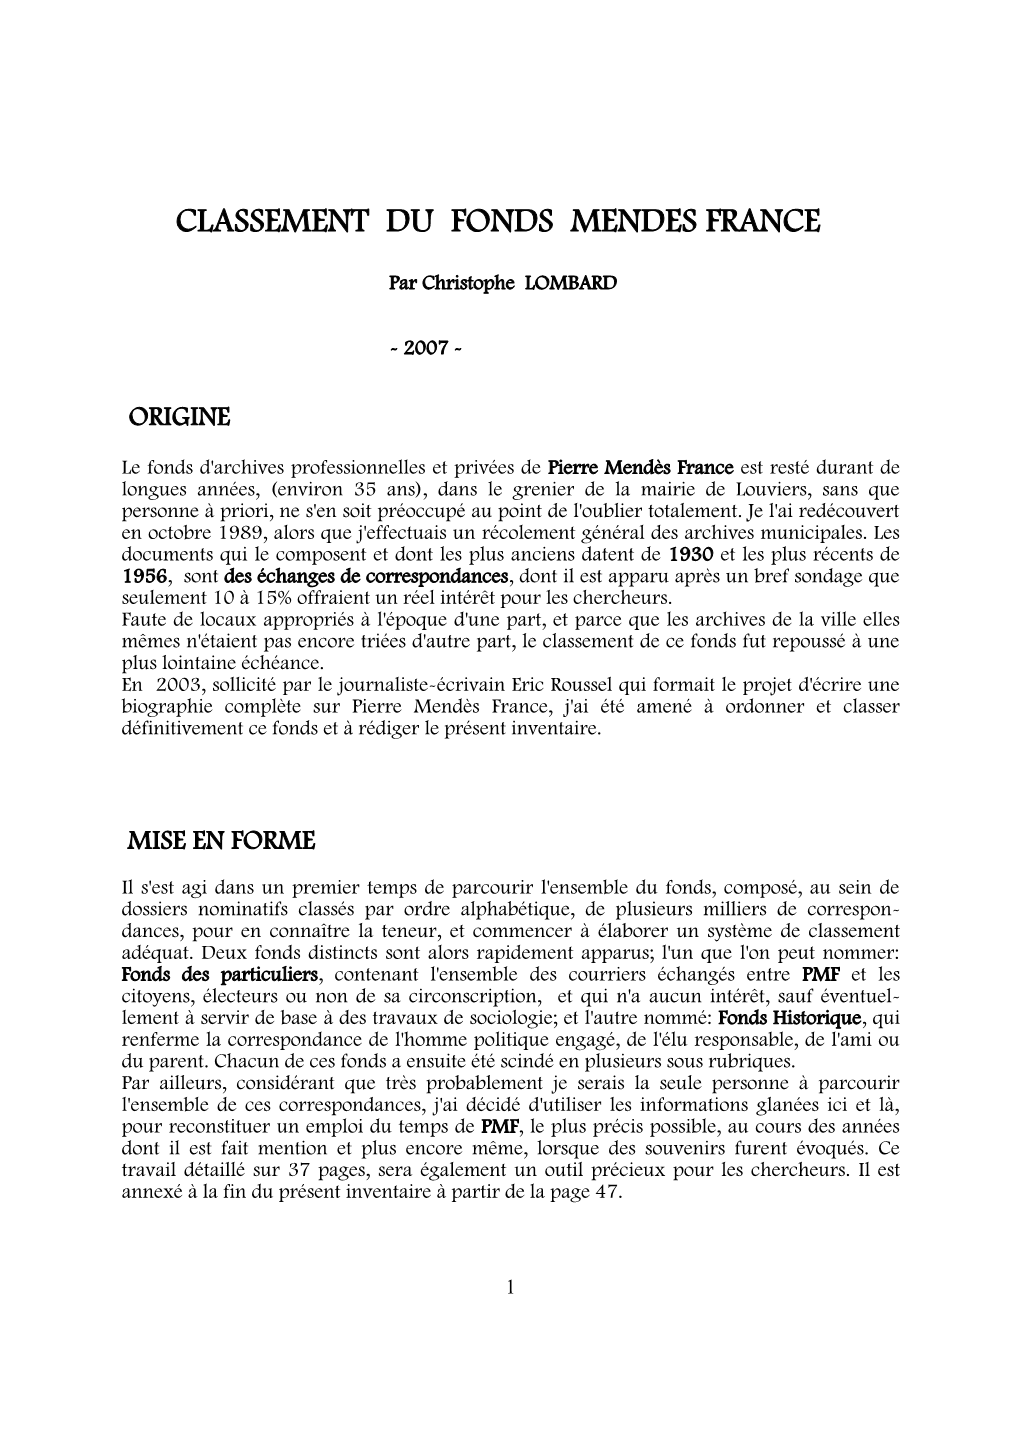 Classement Du Fonds Mendes-France